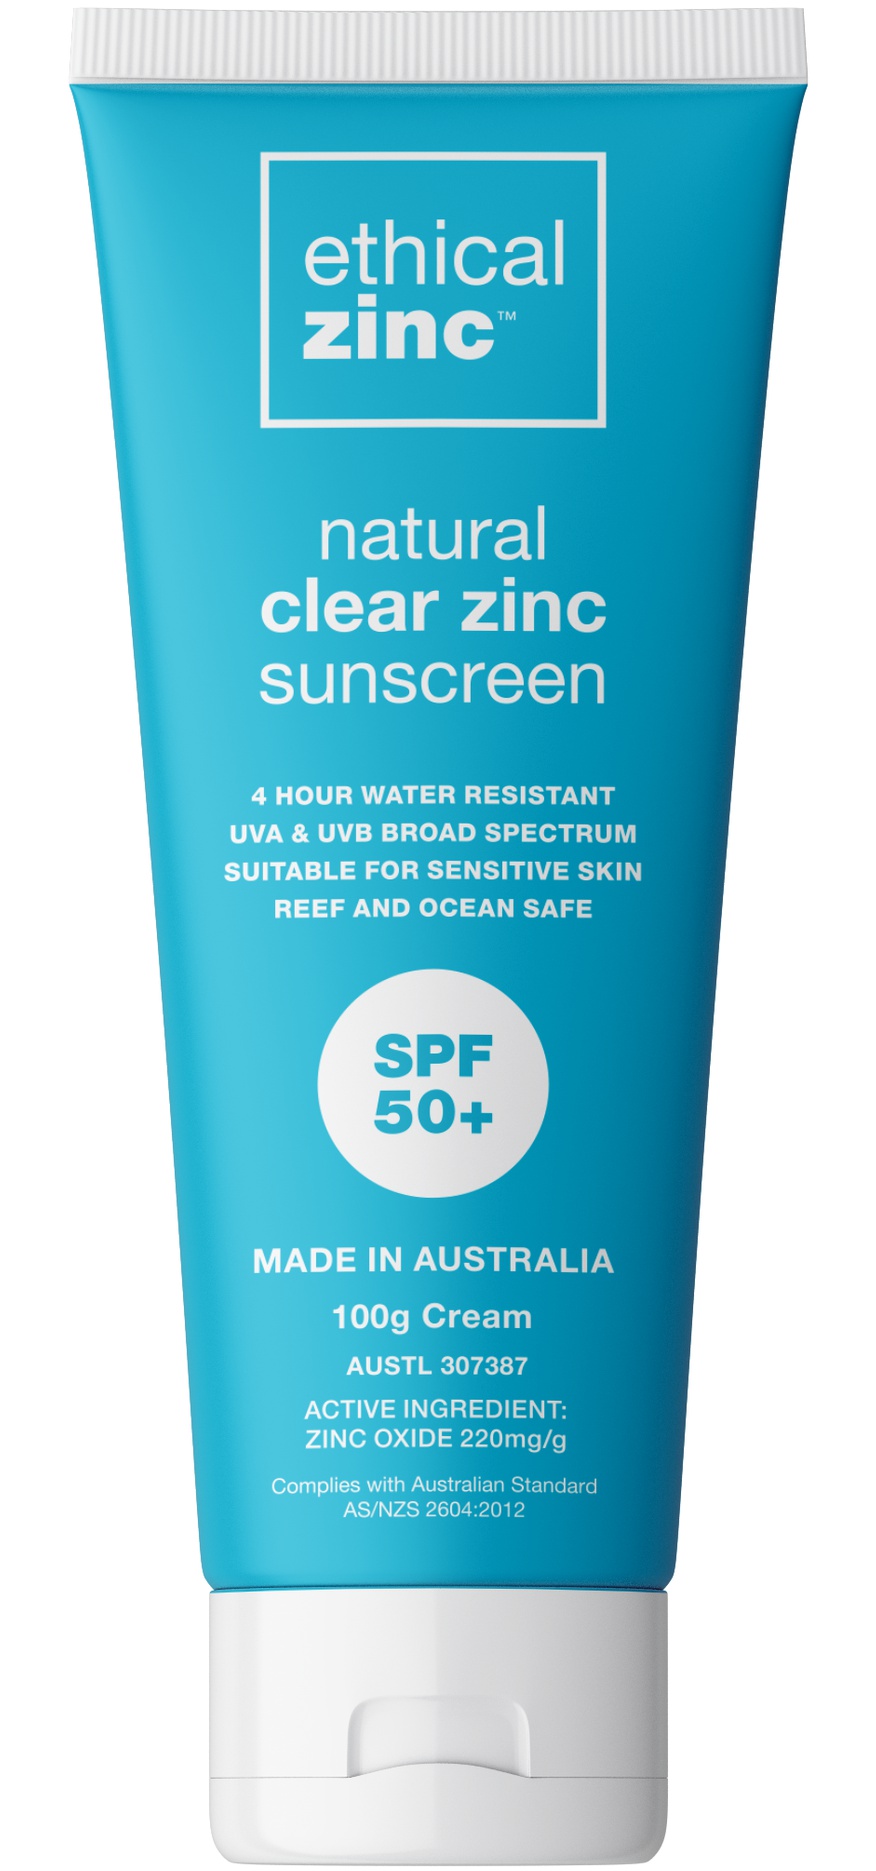 Ethical Zinc SPF 50+ Natural Clear Zinc Sunscreen